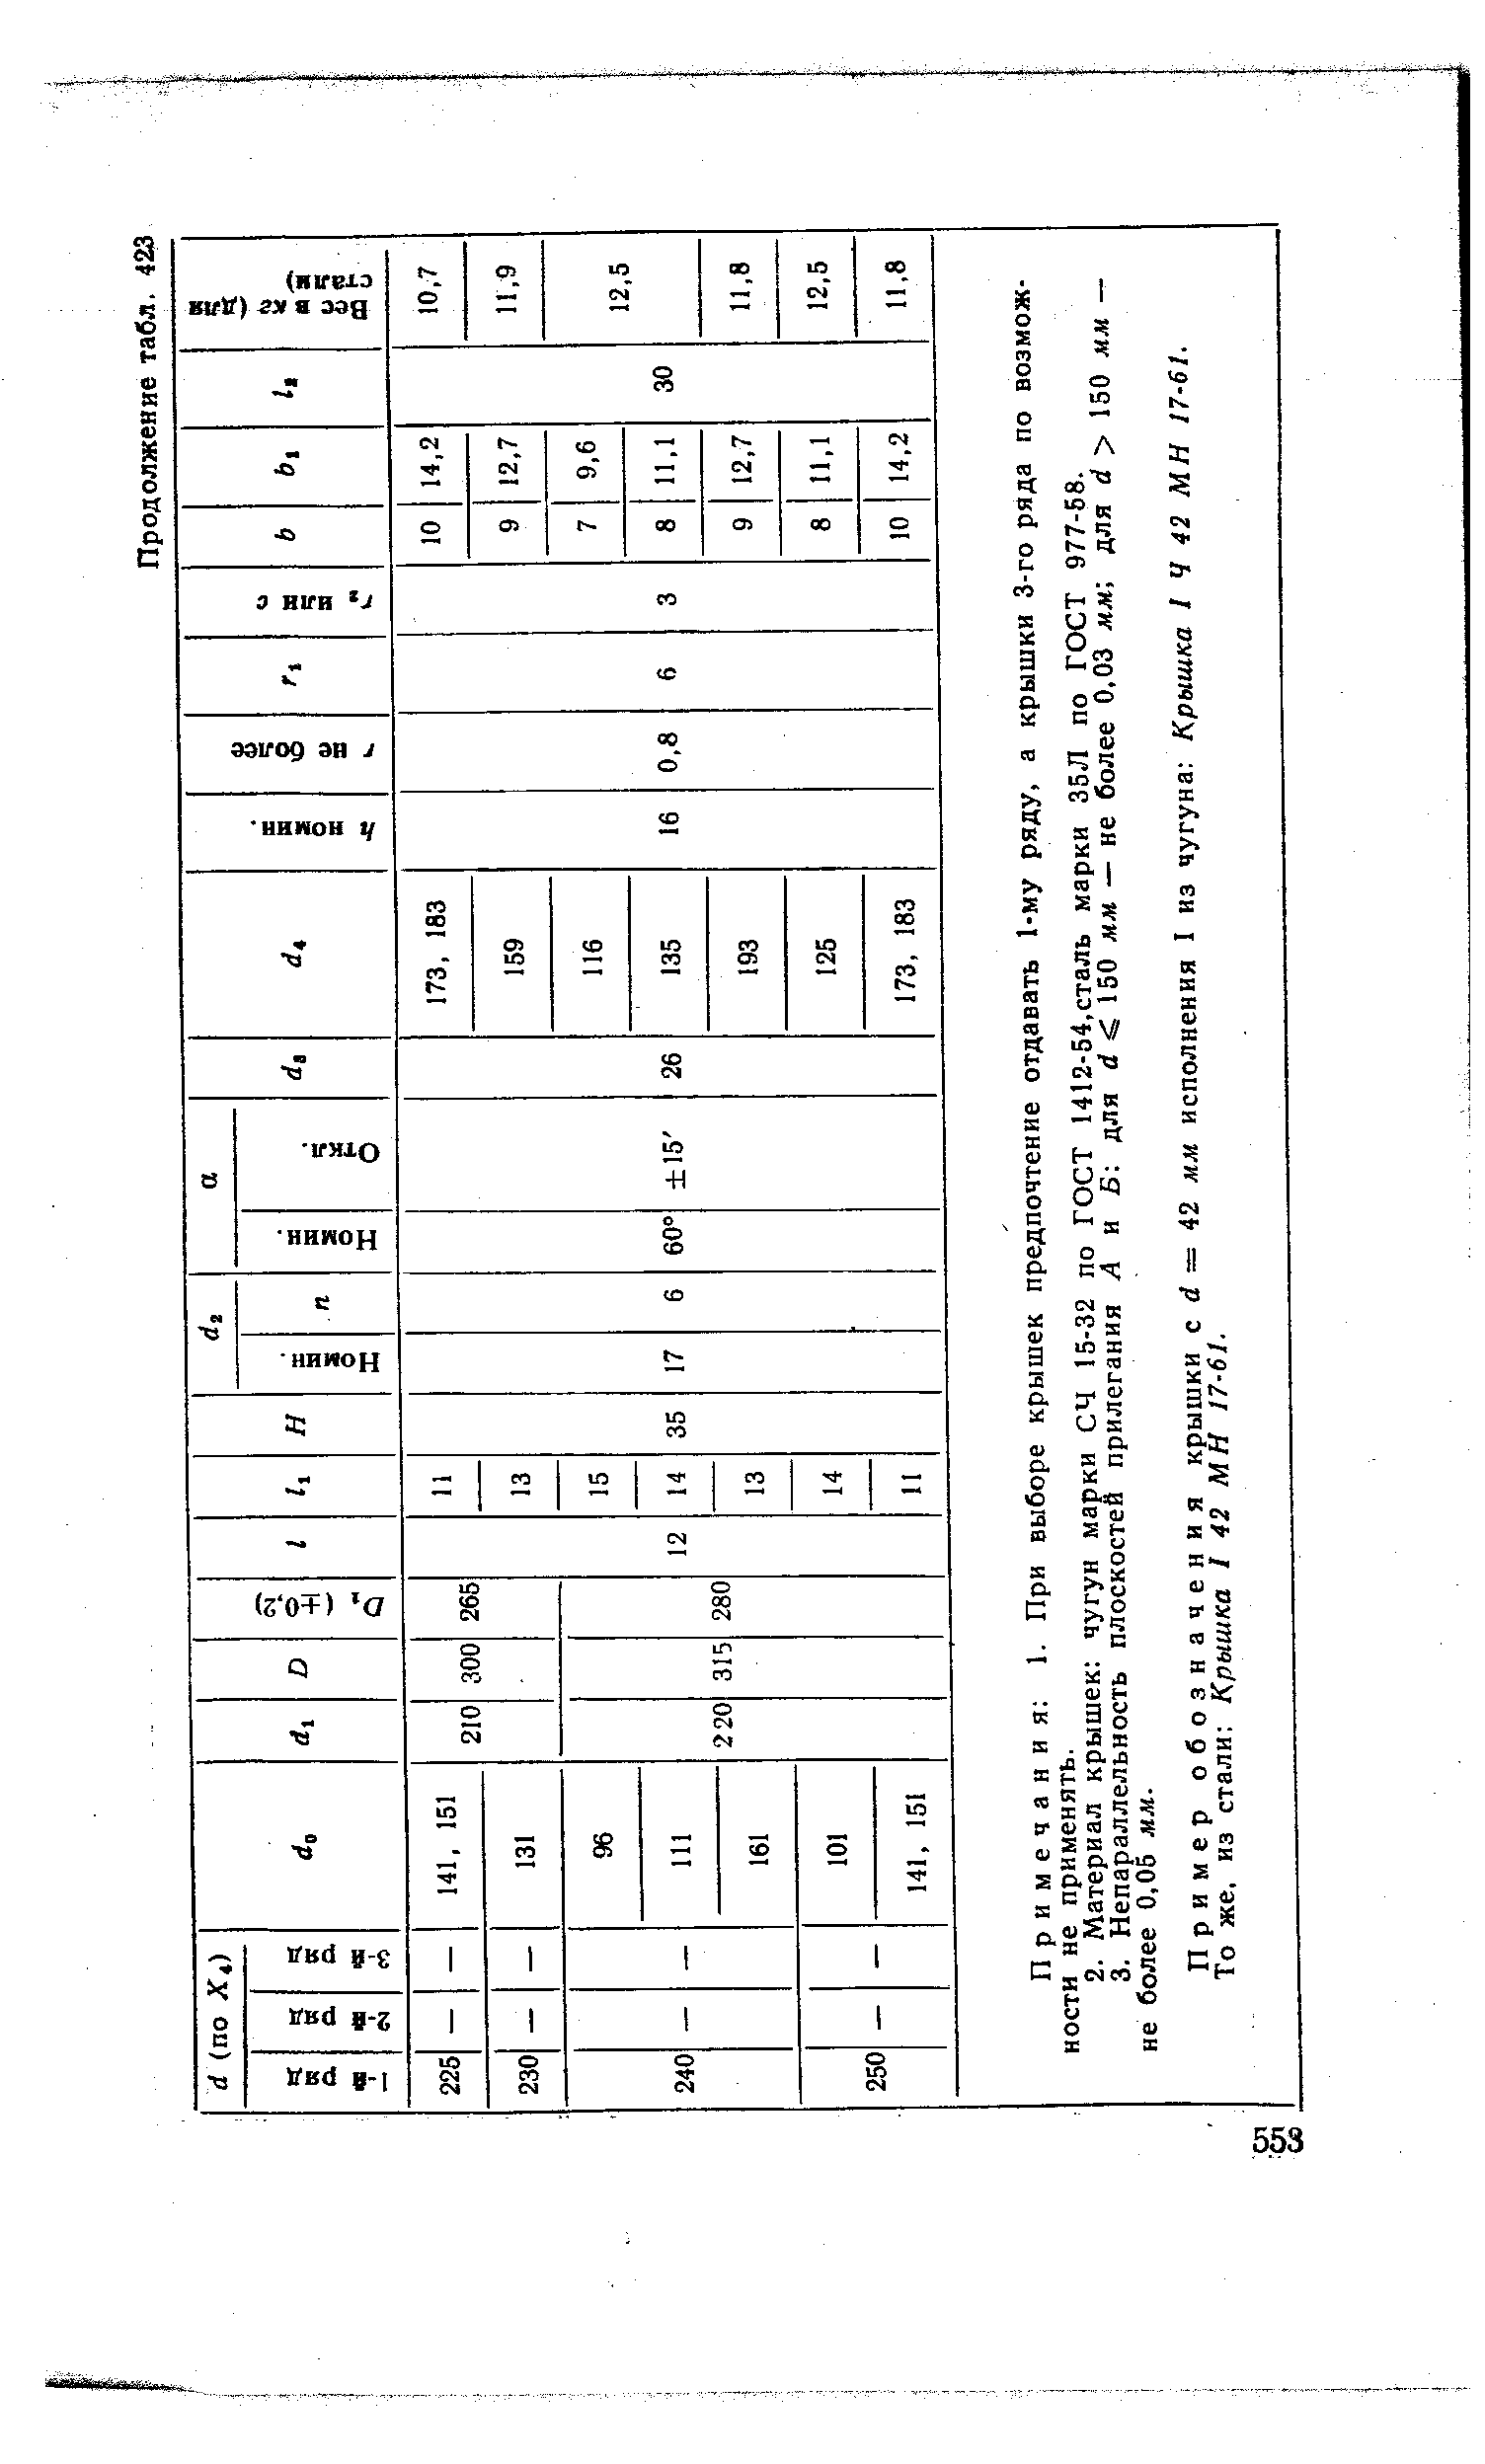 Пример обозначения крышки с d = 42 ля исполнения 1 из чугуна Крышка I Ч 42 МН 17-61.
